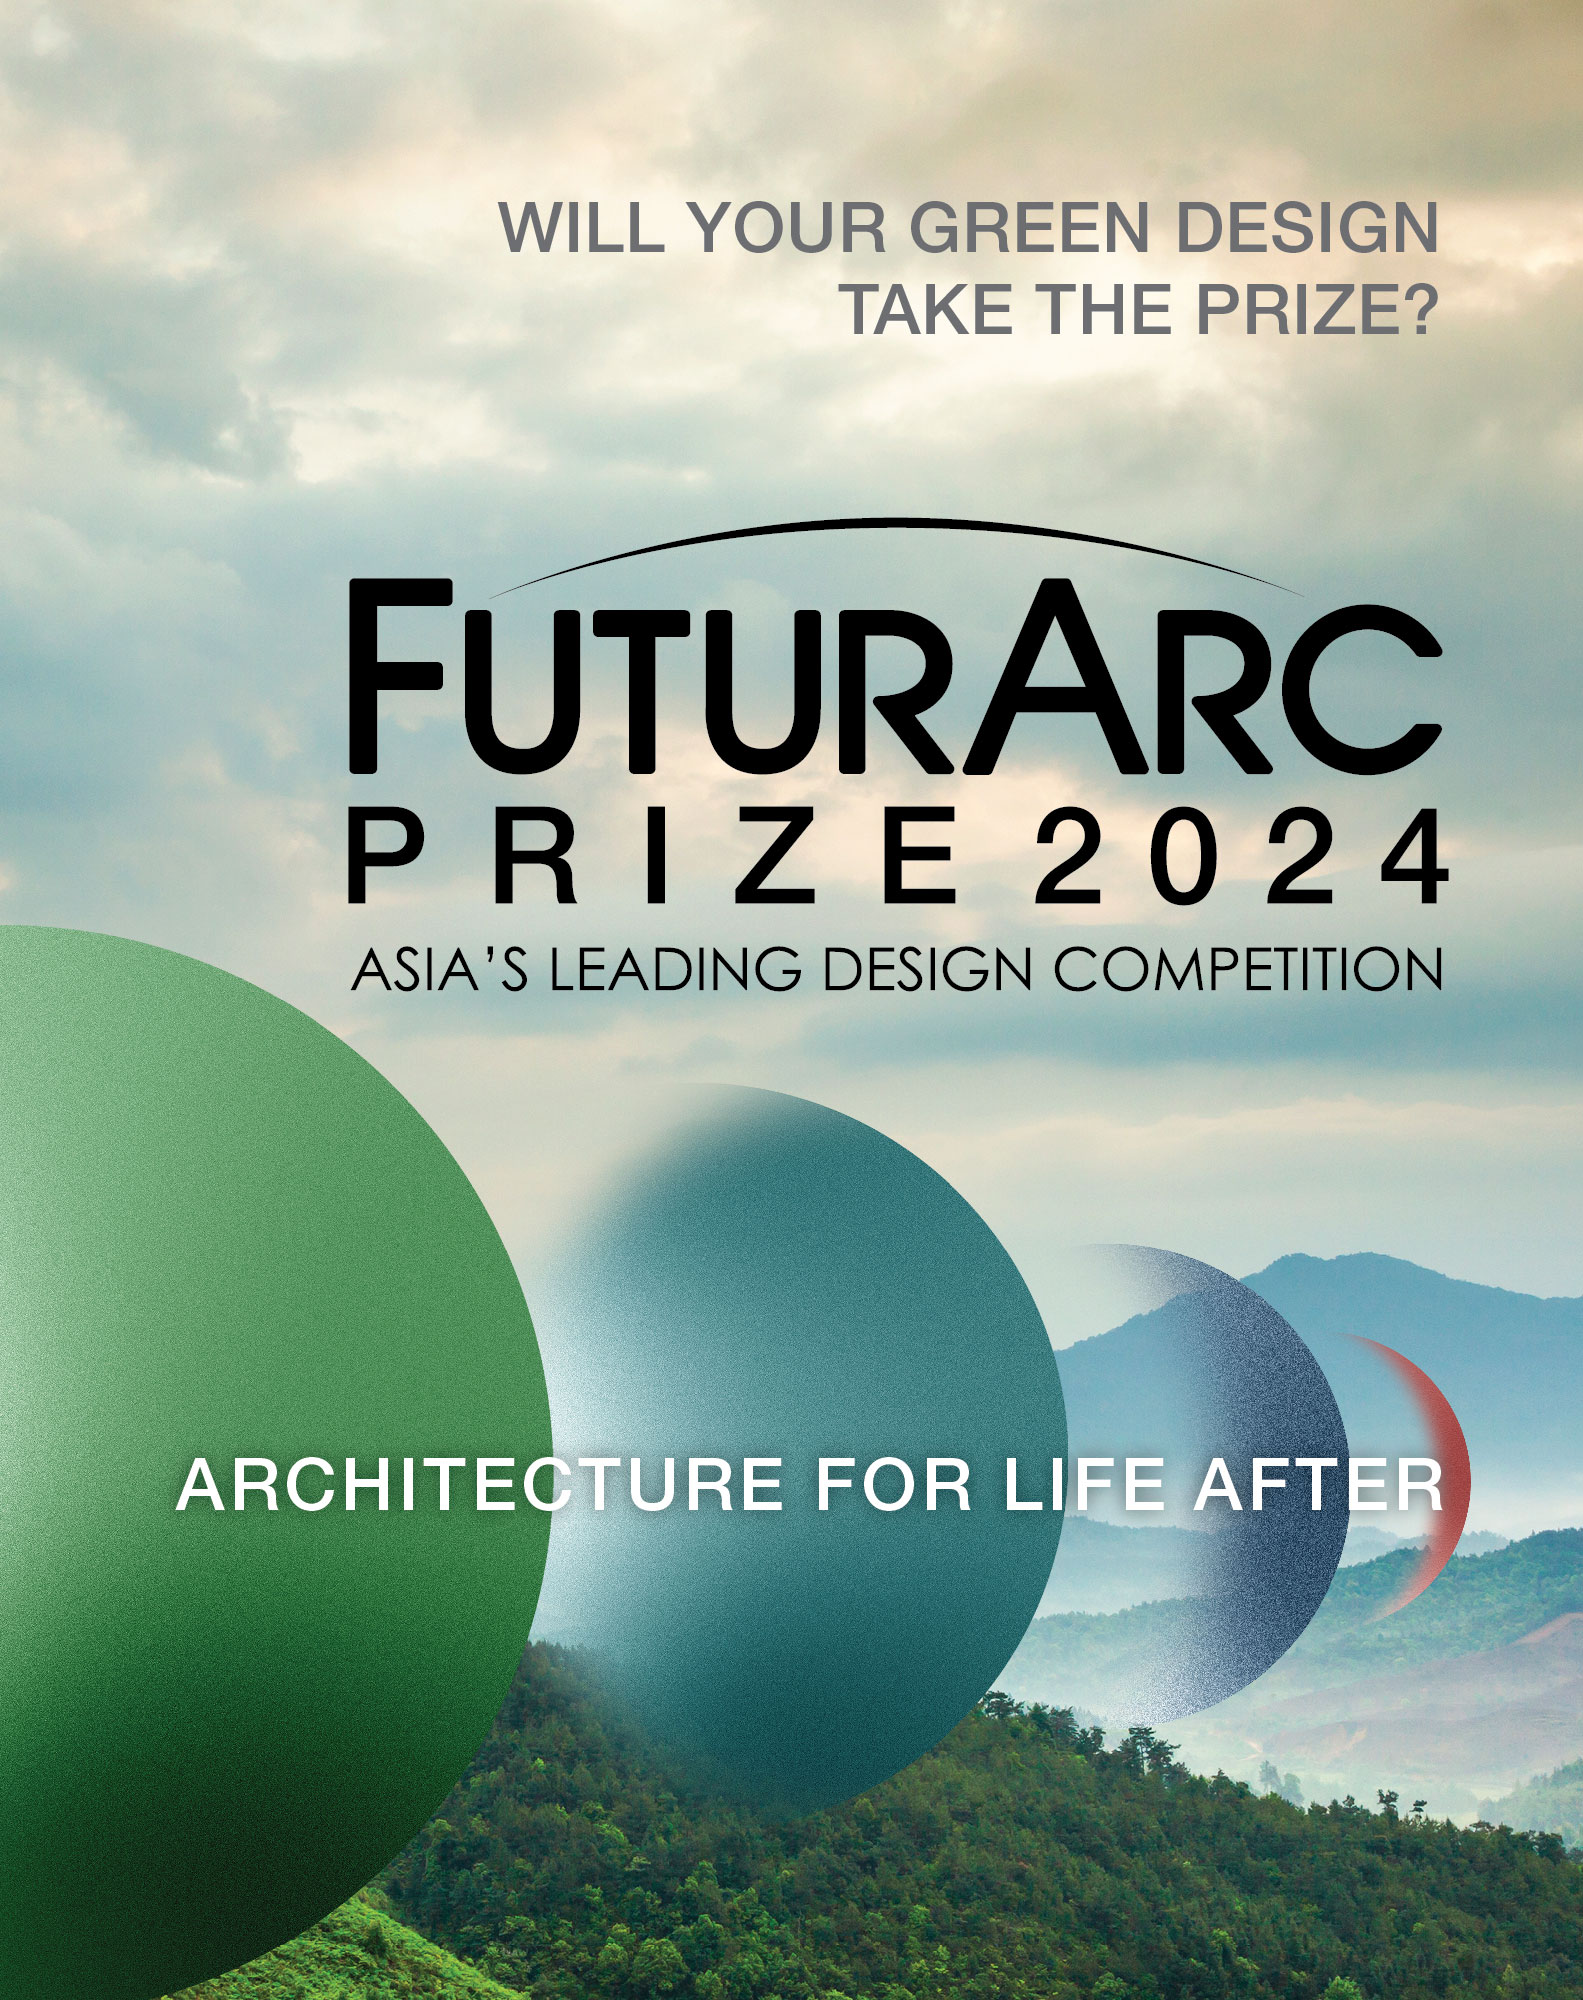 FuturArc Prize 2024